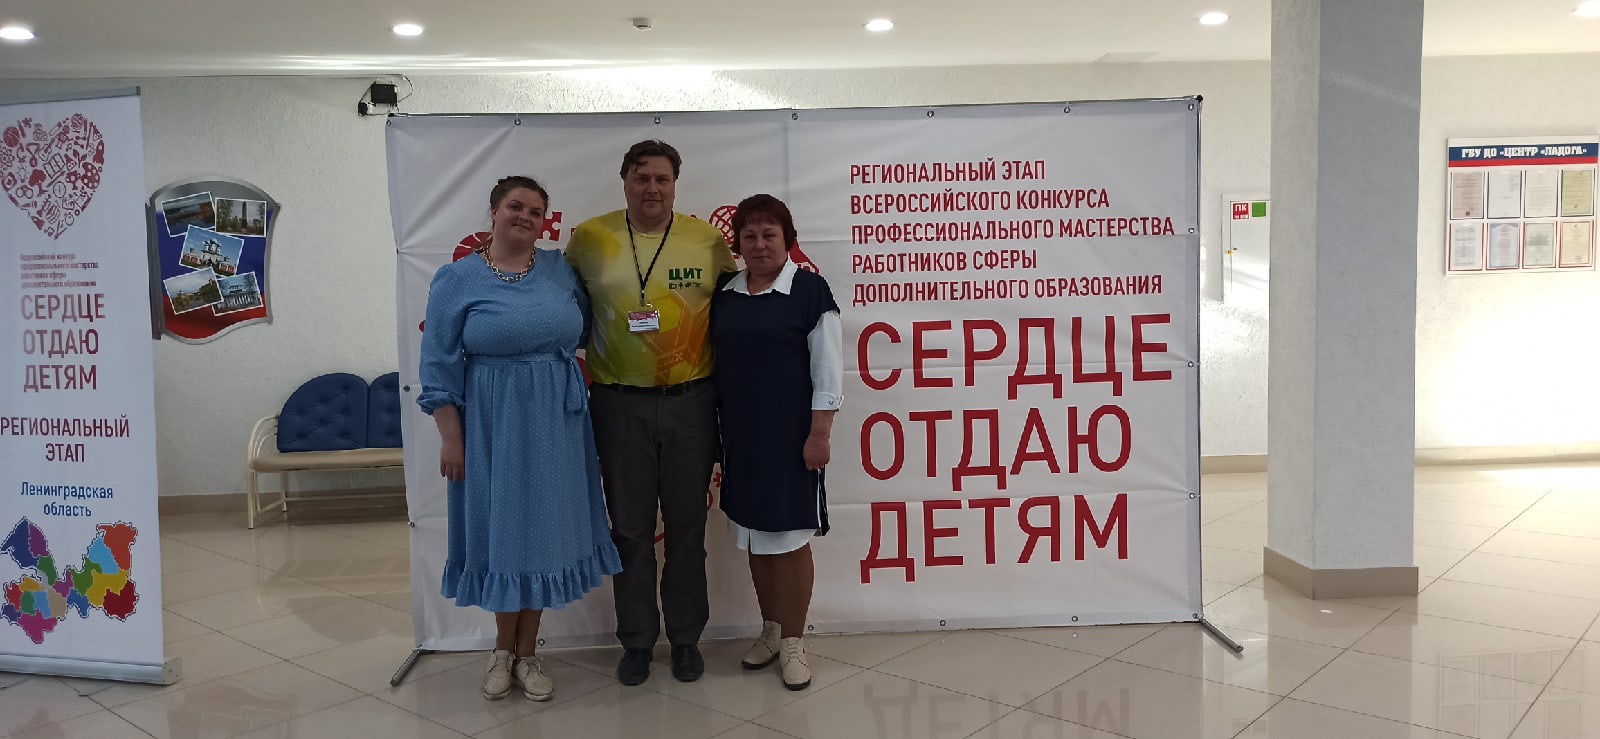 Педагог дополнительного образования Волосовского района победил в региональном этапе Всероссийского конкурса